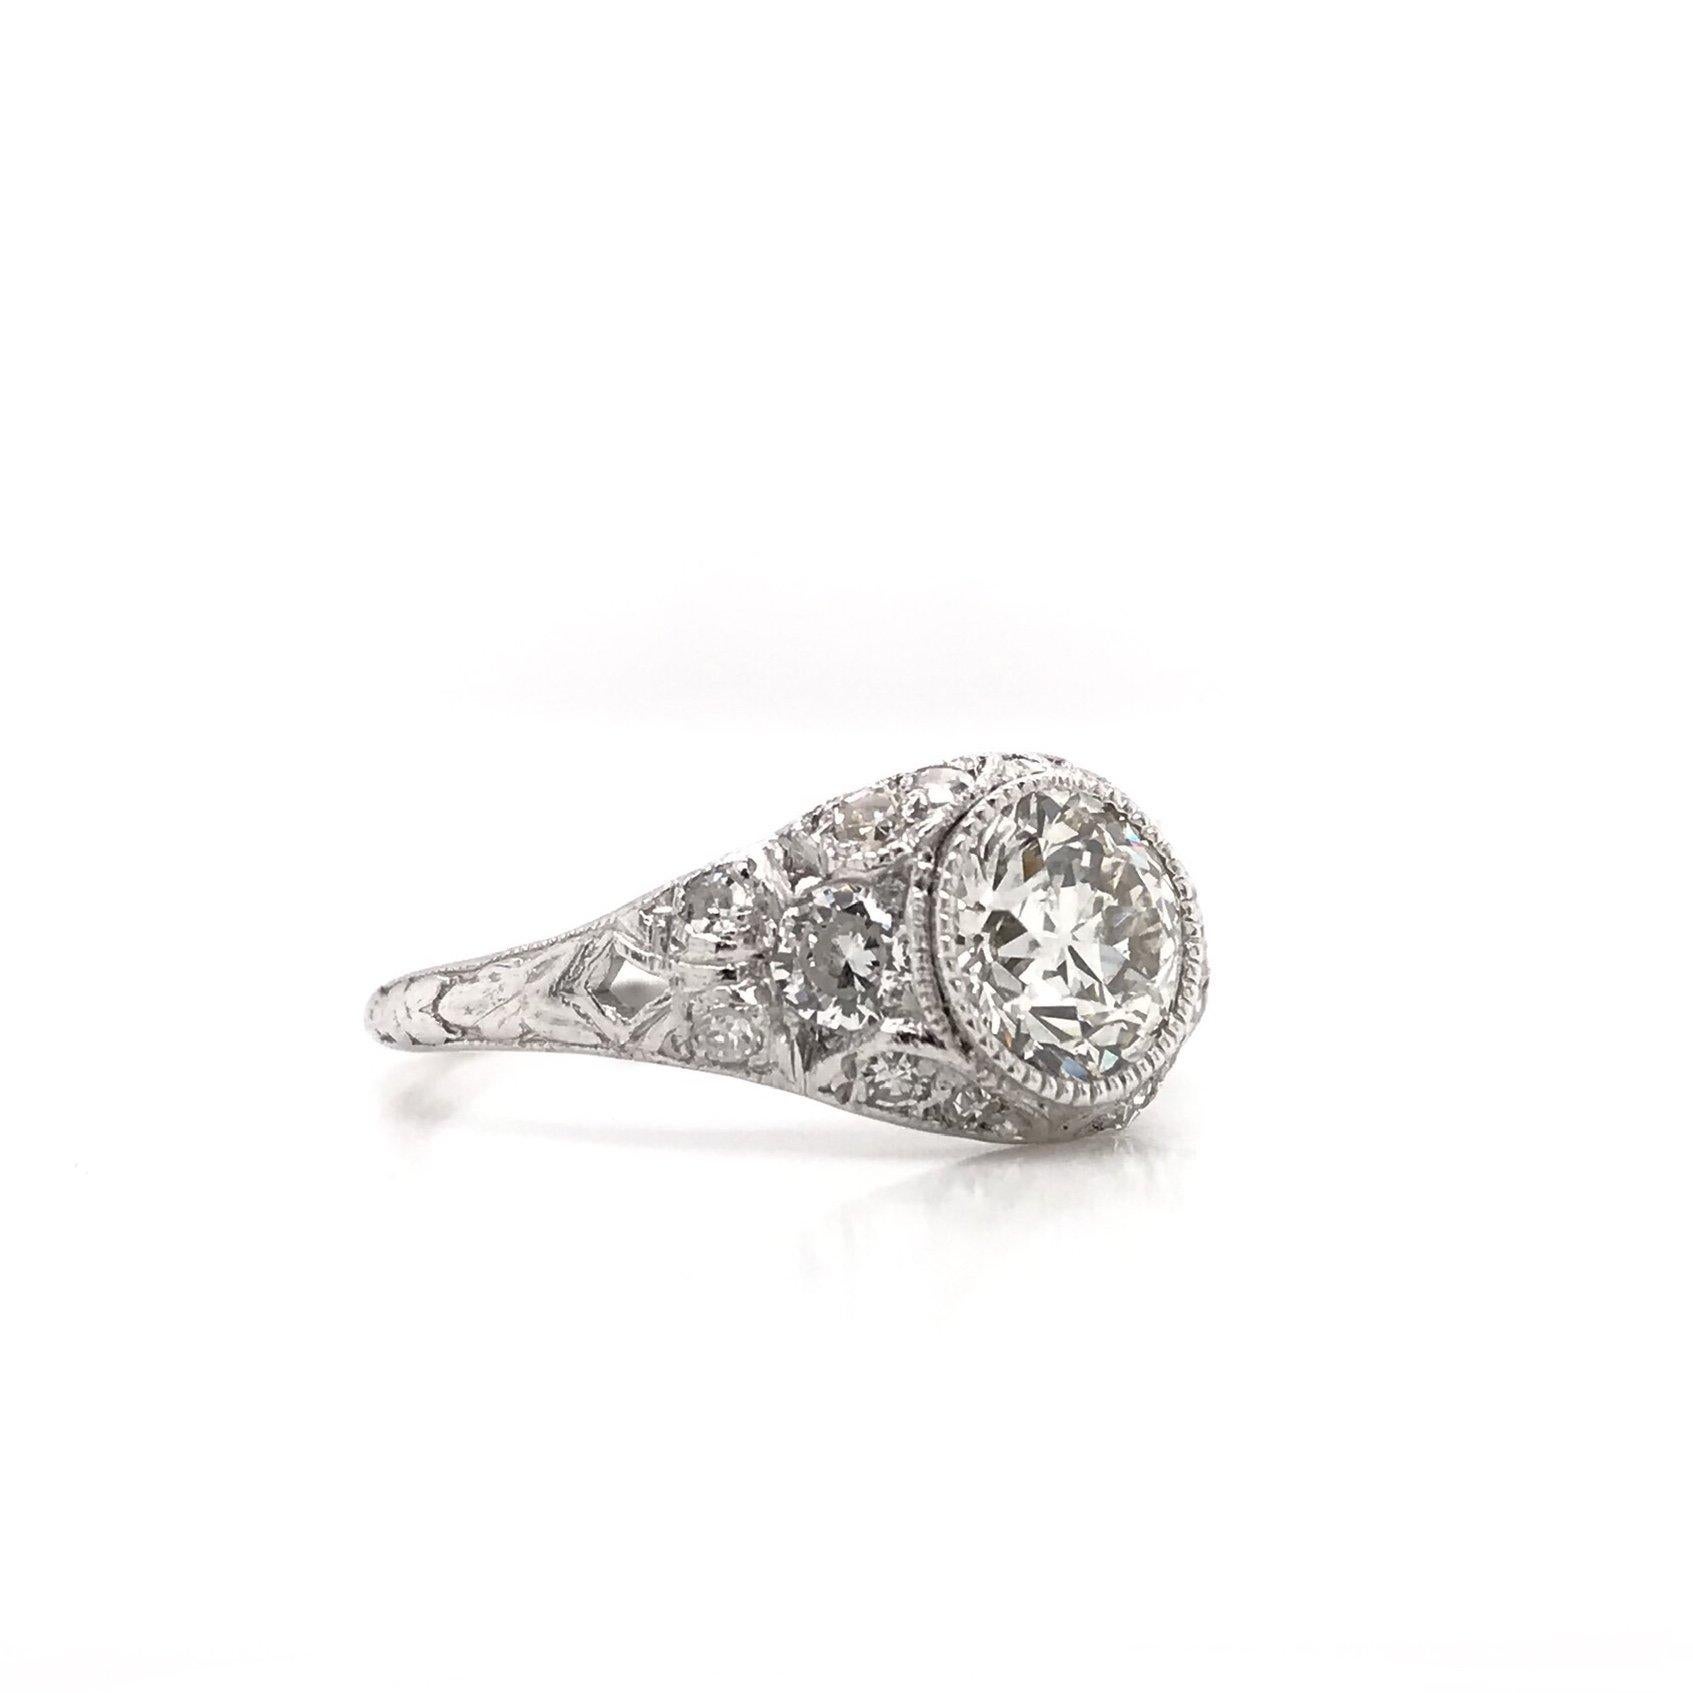 Old European Cut Edwardian Era 1.00 Carat Platinum Diamond Engagement Ring